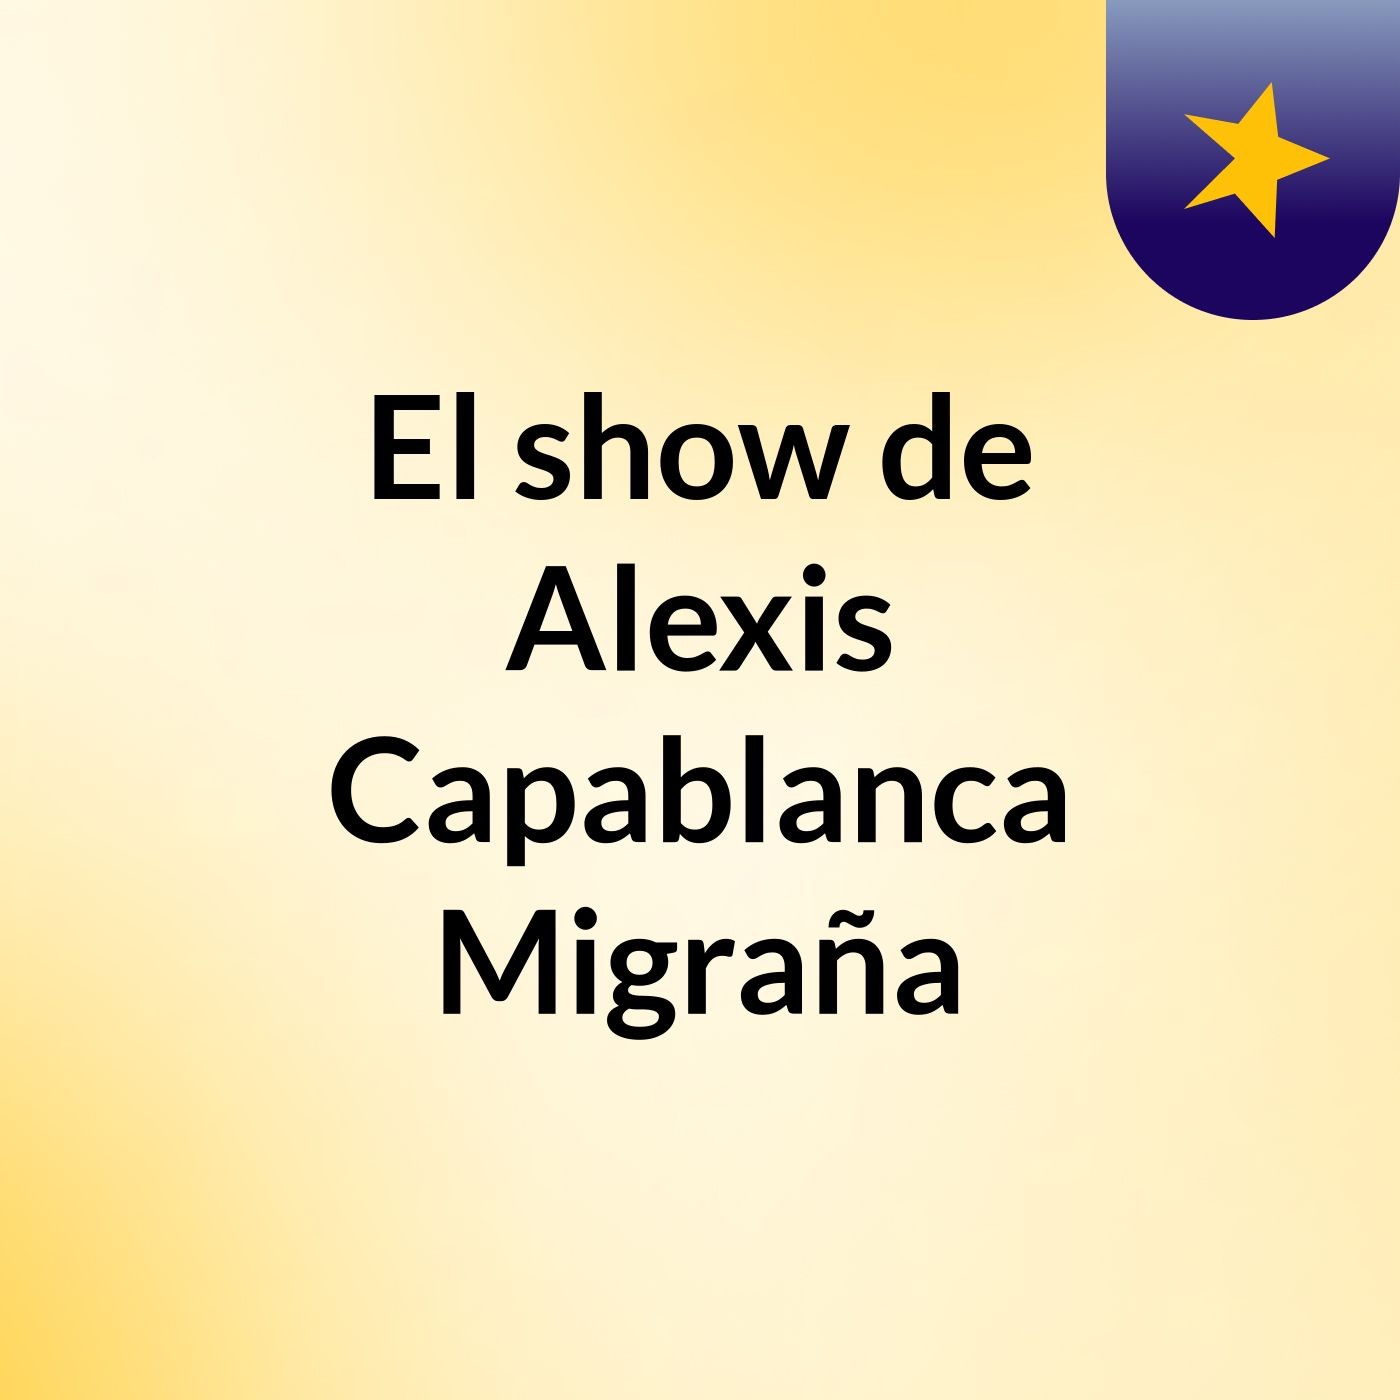 El show de Alexis Capablanca Migraña